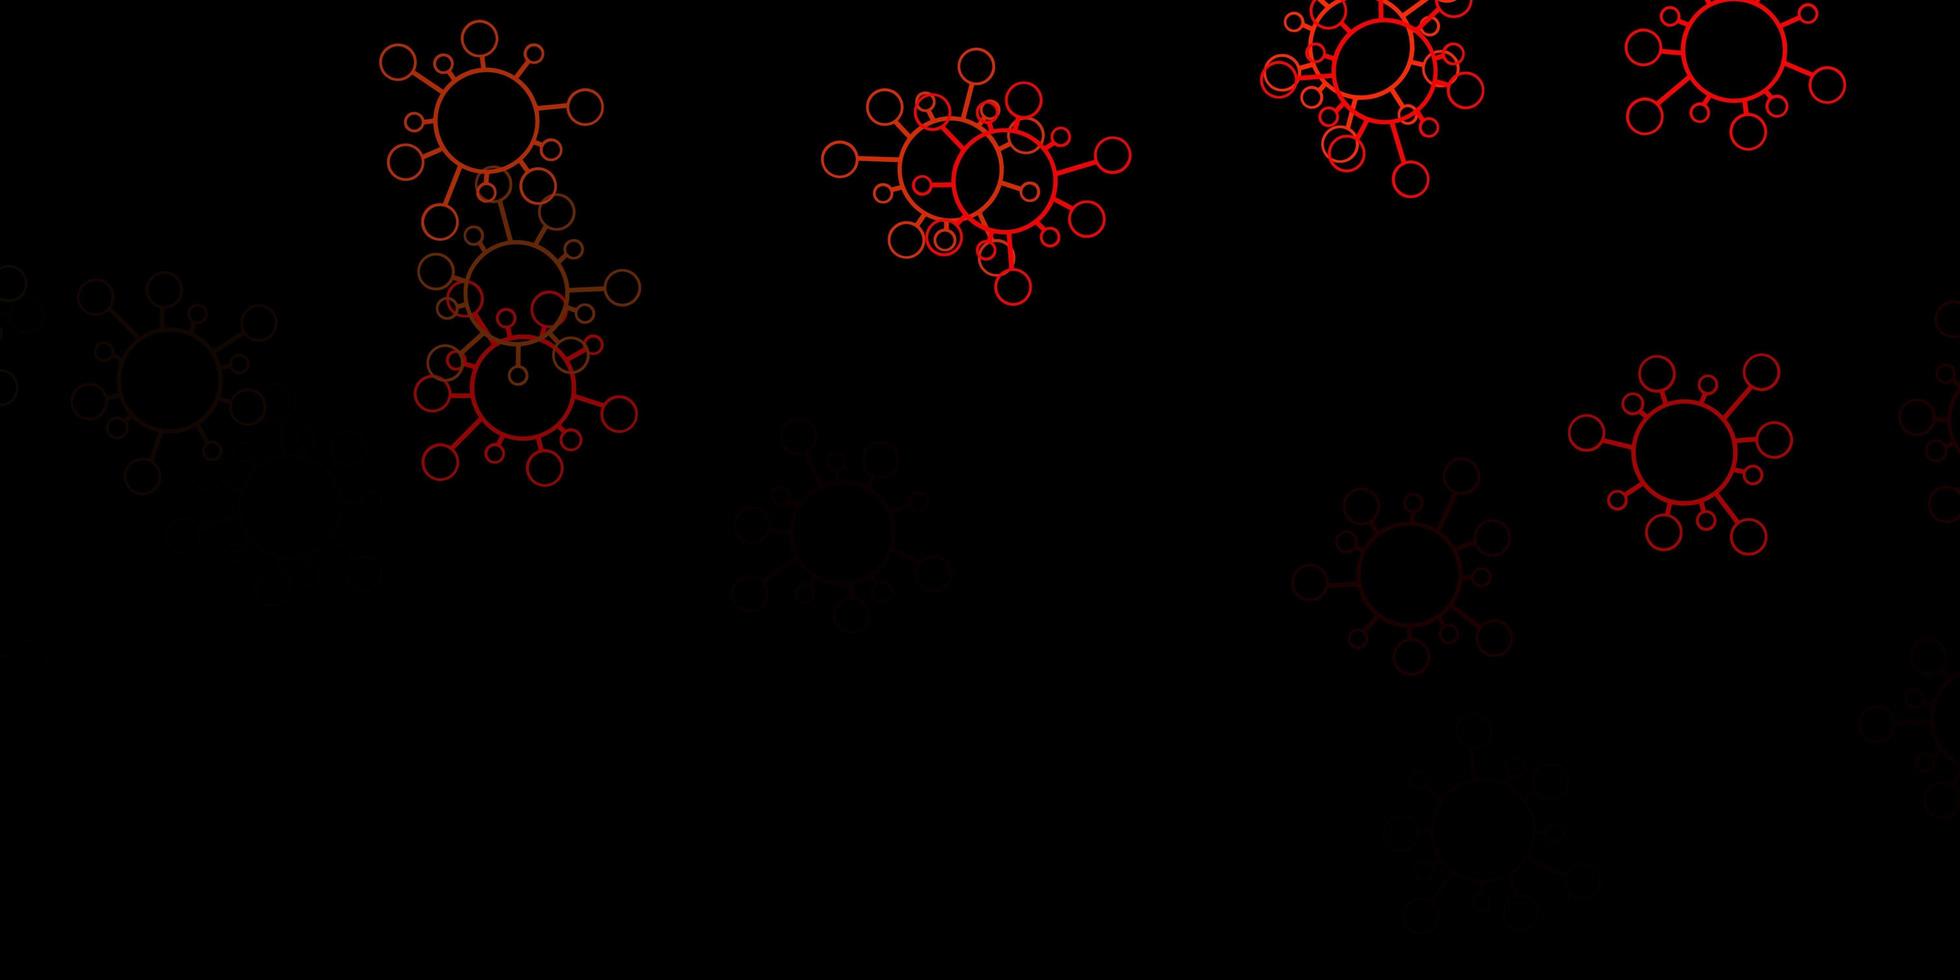 telón de fondo naranja oscuro con símbolos de virus. vector